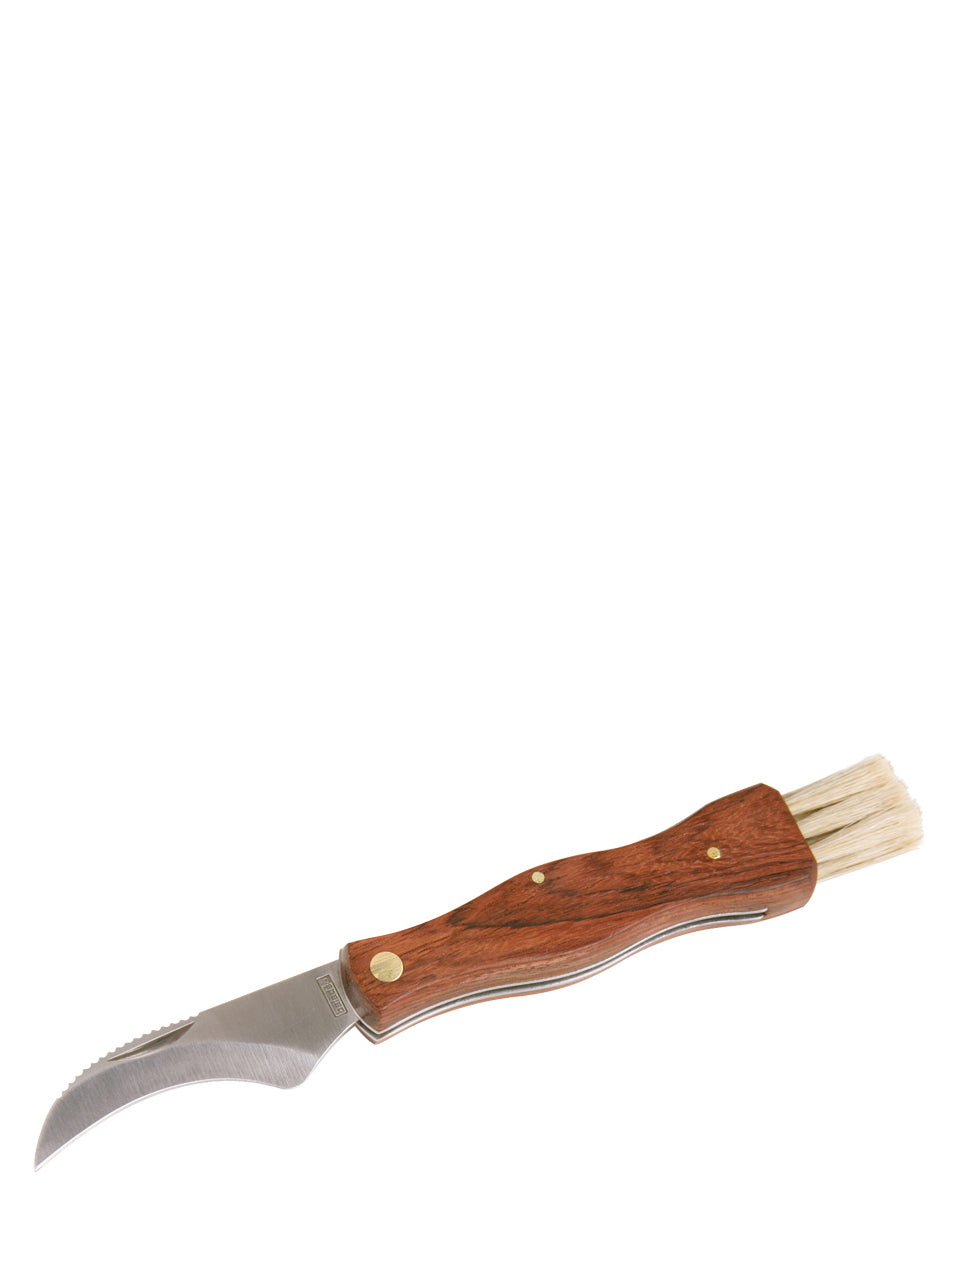 Mushroom jack-knife